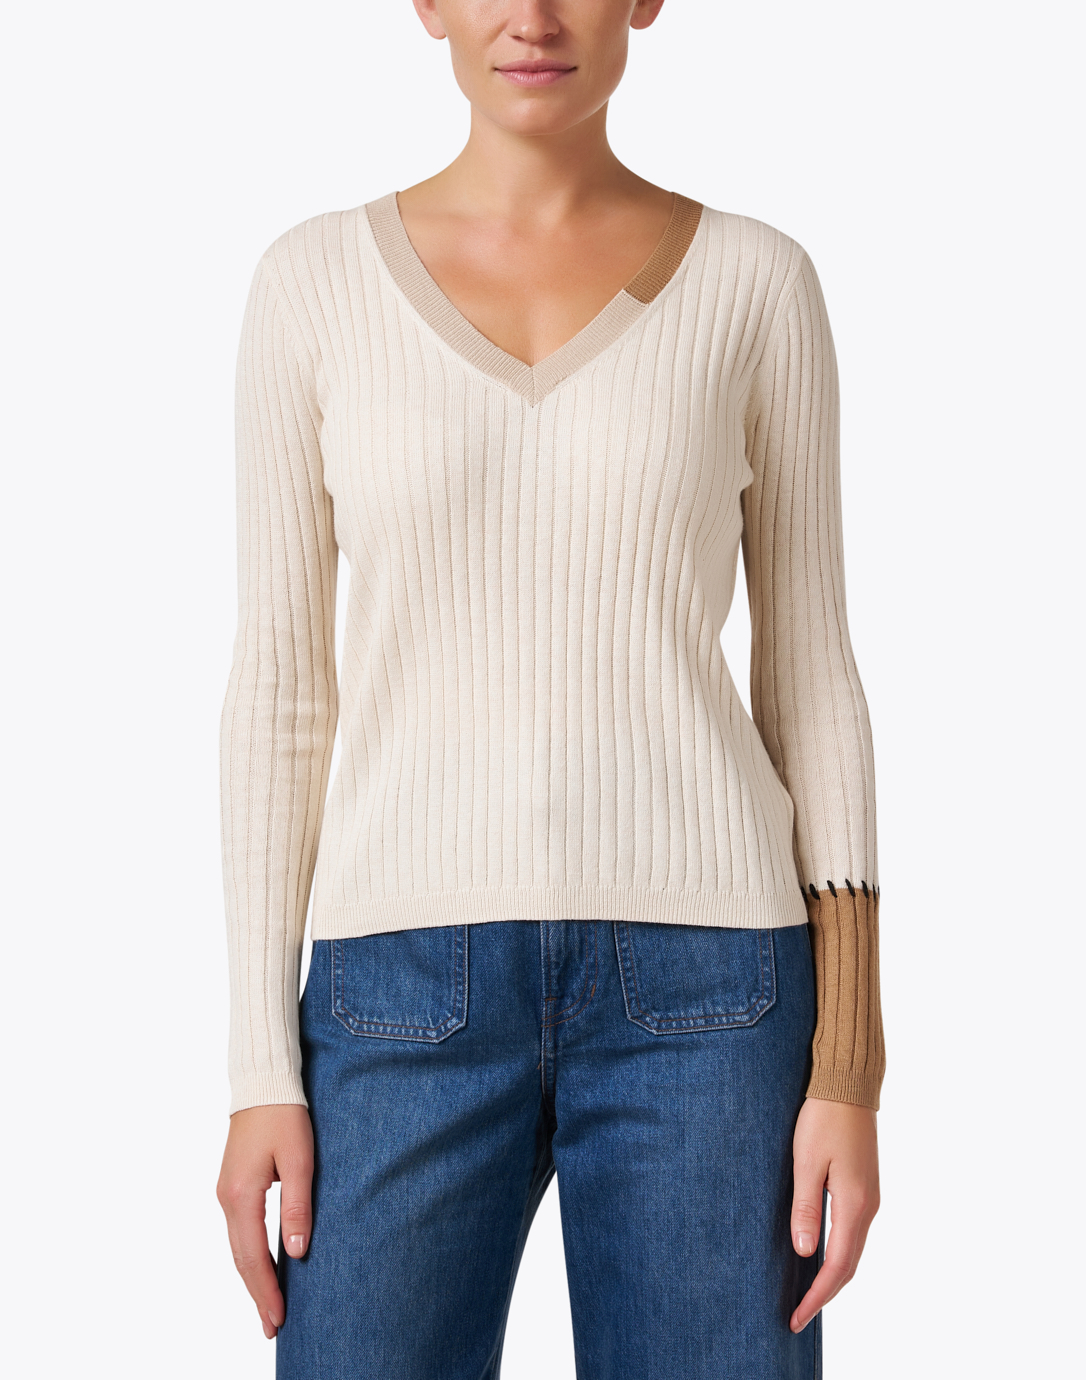 Beige Multi Cotton Cashmere Sweater